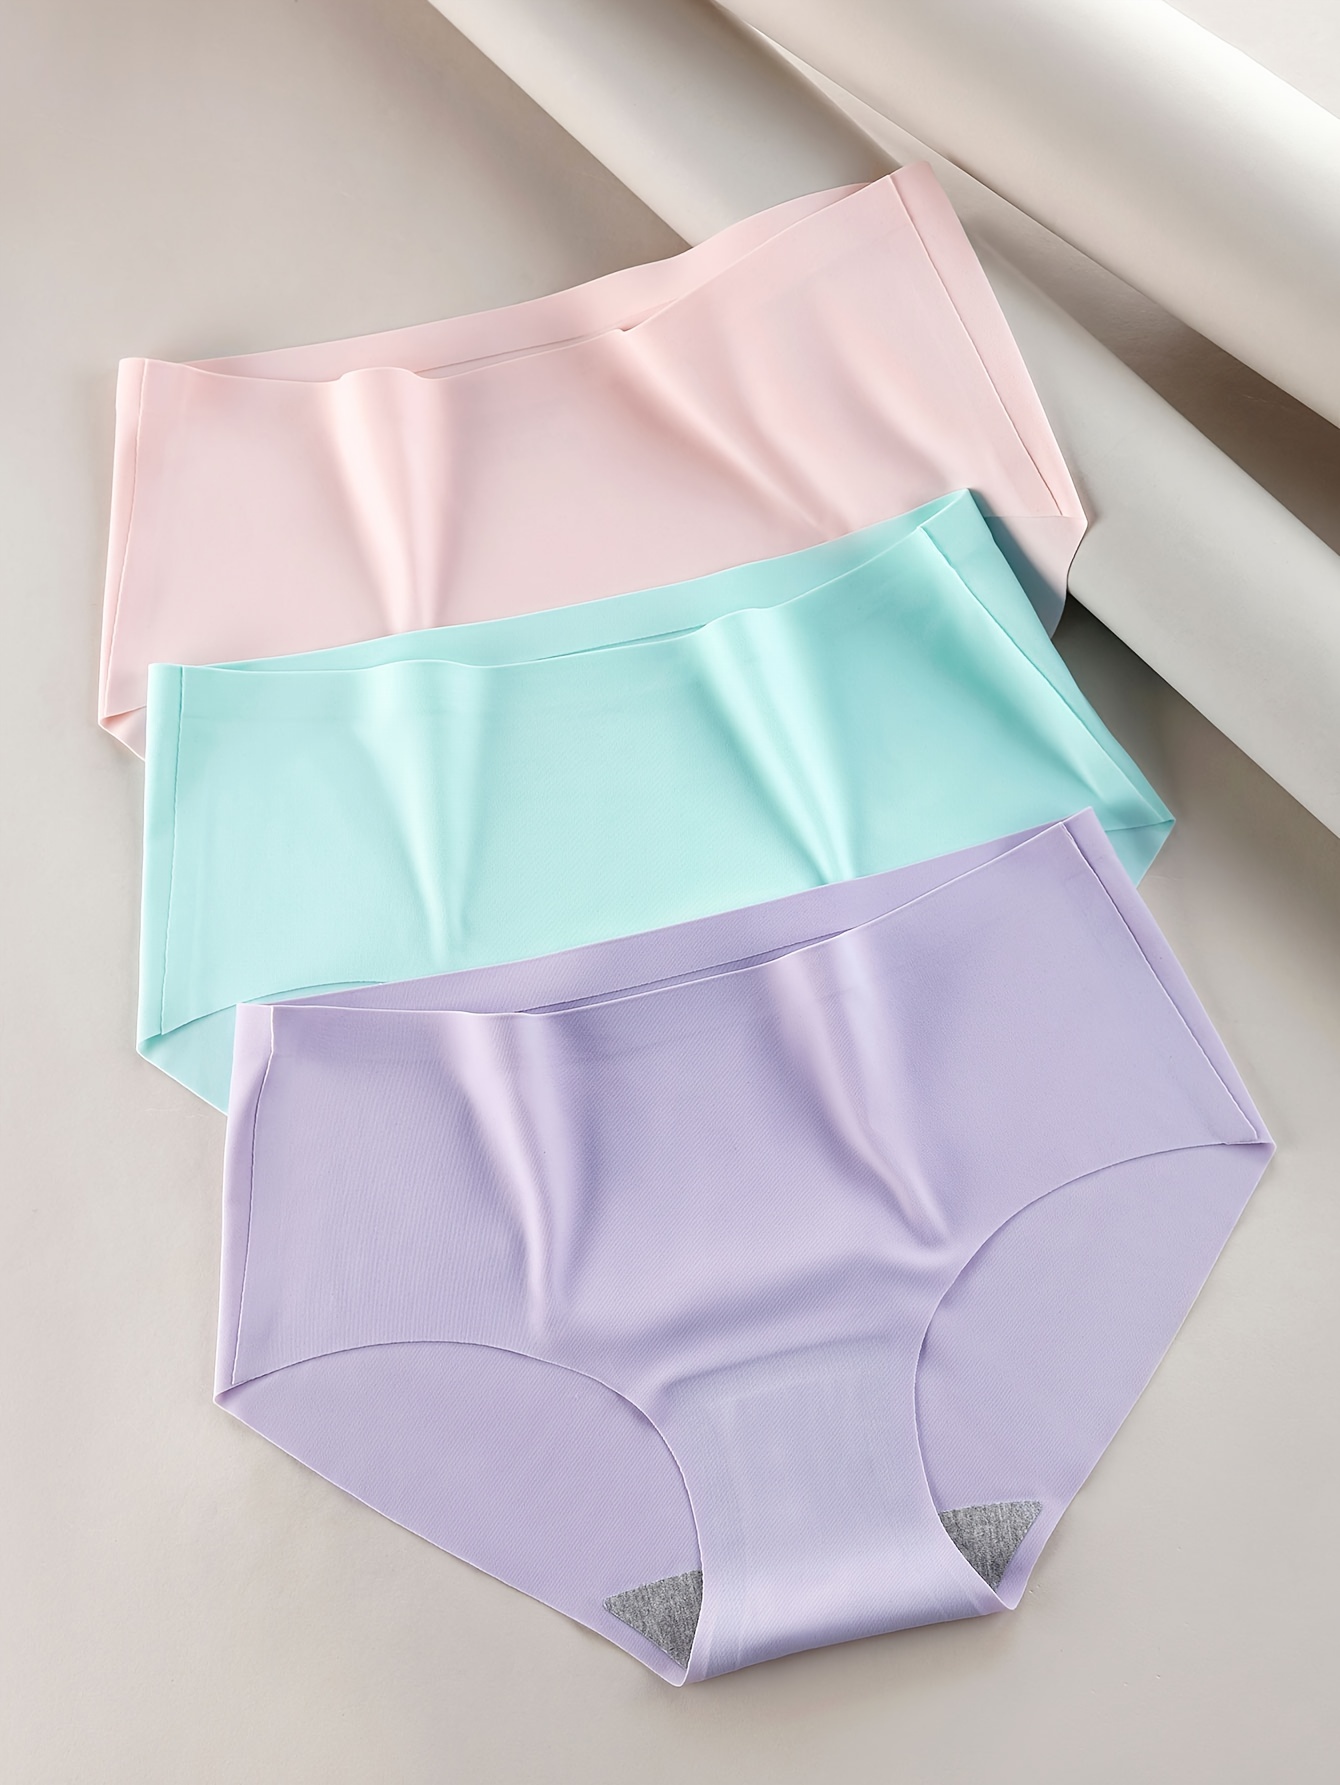 Lingerie Panties Colors Underwear Cotton Women 3pcs/lot Size Solid